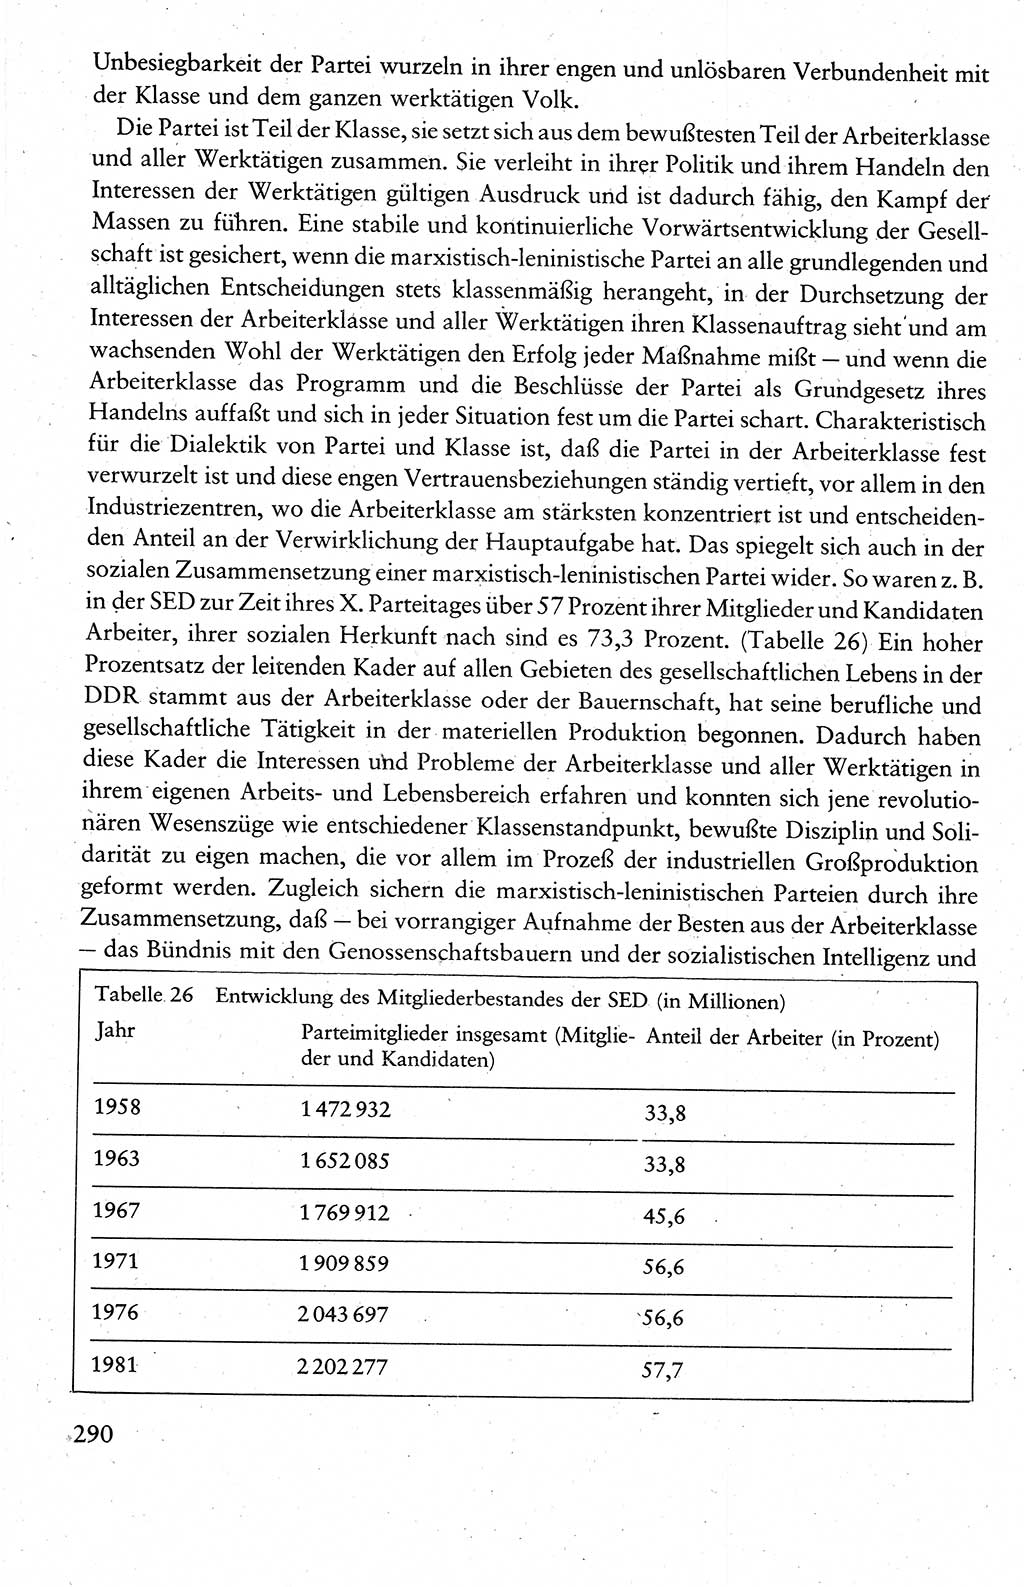 Wissenschaftlicher Kommunismus [Deutsche Demokratische Republik (DDR)], Lehrbuch für das marxistisch-leninistische Grundlagenstudium 1983, Seite 290 (Wiss. Komm. DDR Lb. 1983, S. 290)